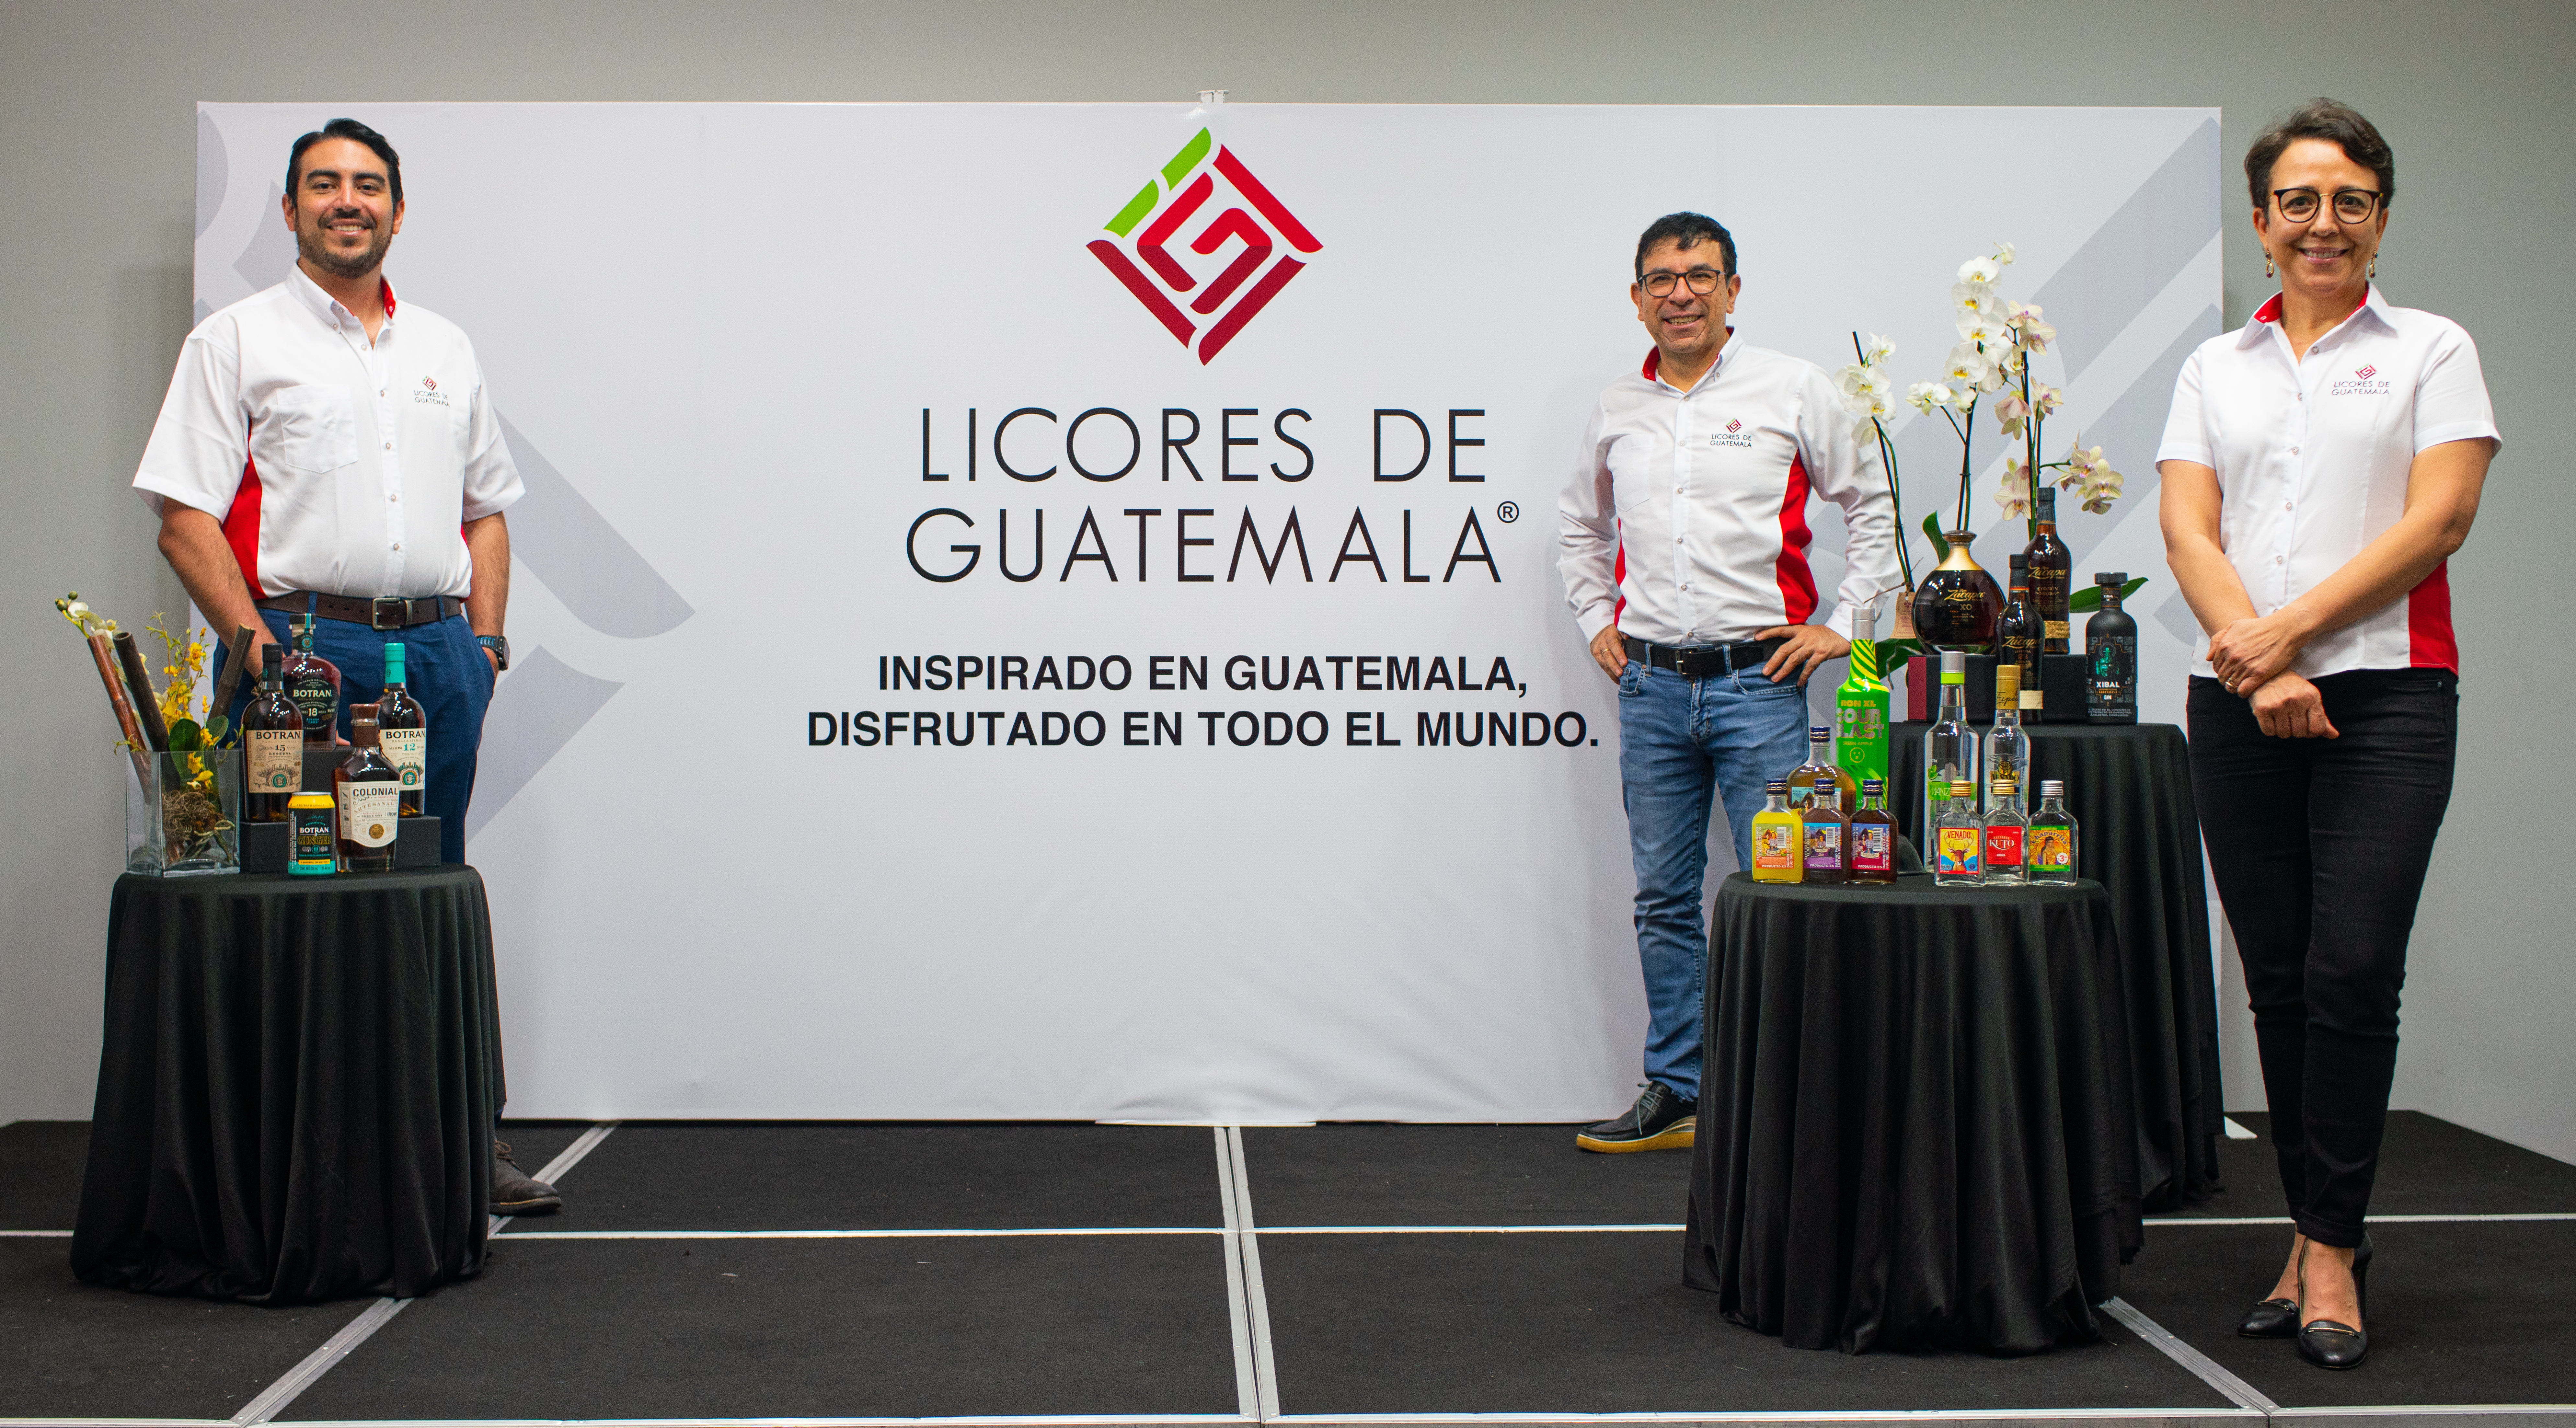 Directivos de Licores de Guatemala presentaron el nuevo logo y nombre. Foto Prensa Libre: Cortesía.